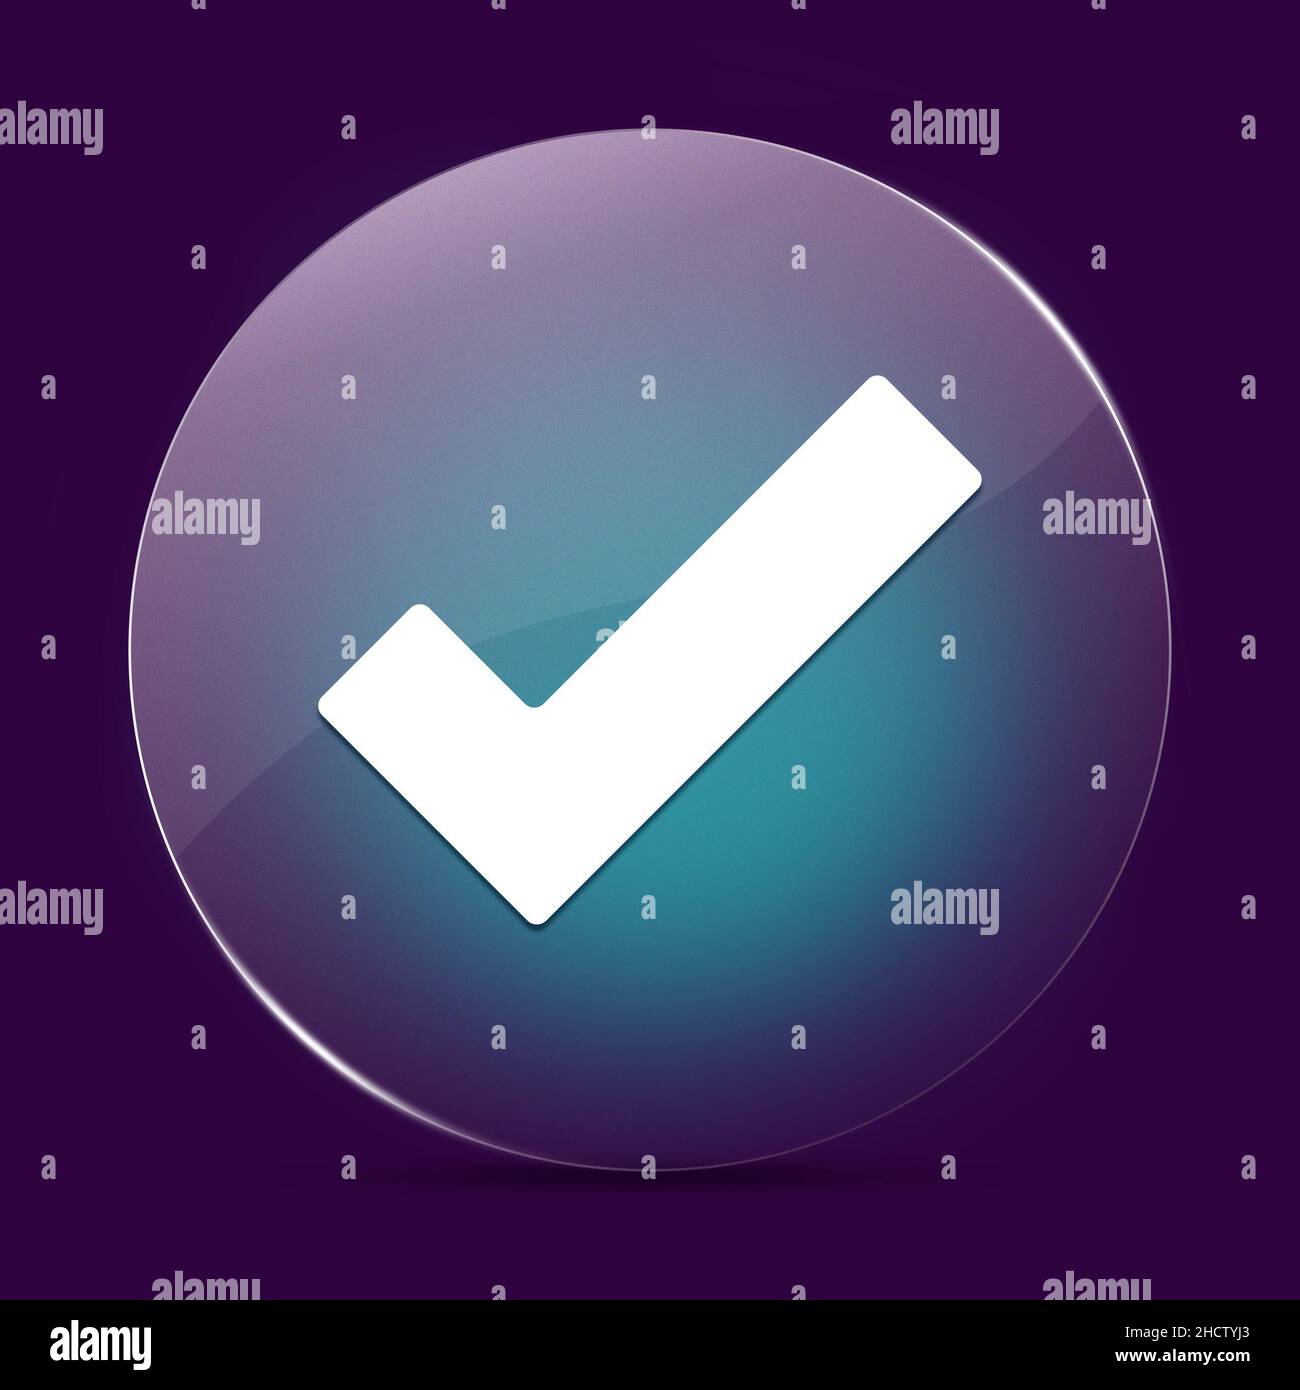 Segno di spunta vetro chiaro moonlight pulsante rotondo astratto su uno sfondo viola scuro astratto Foto Stock